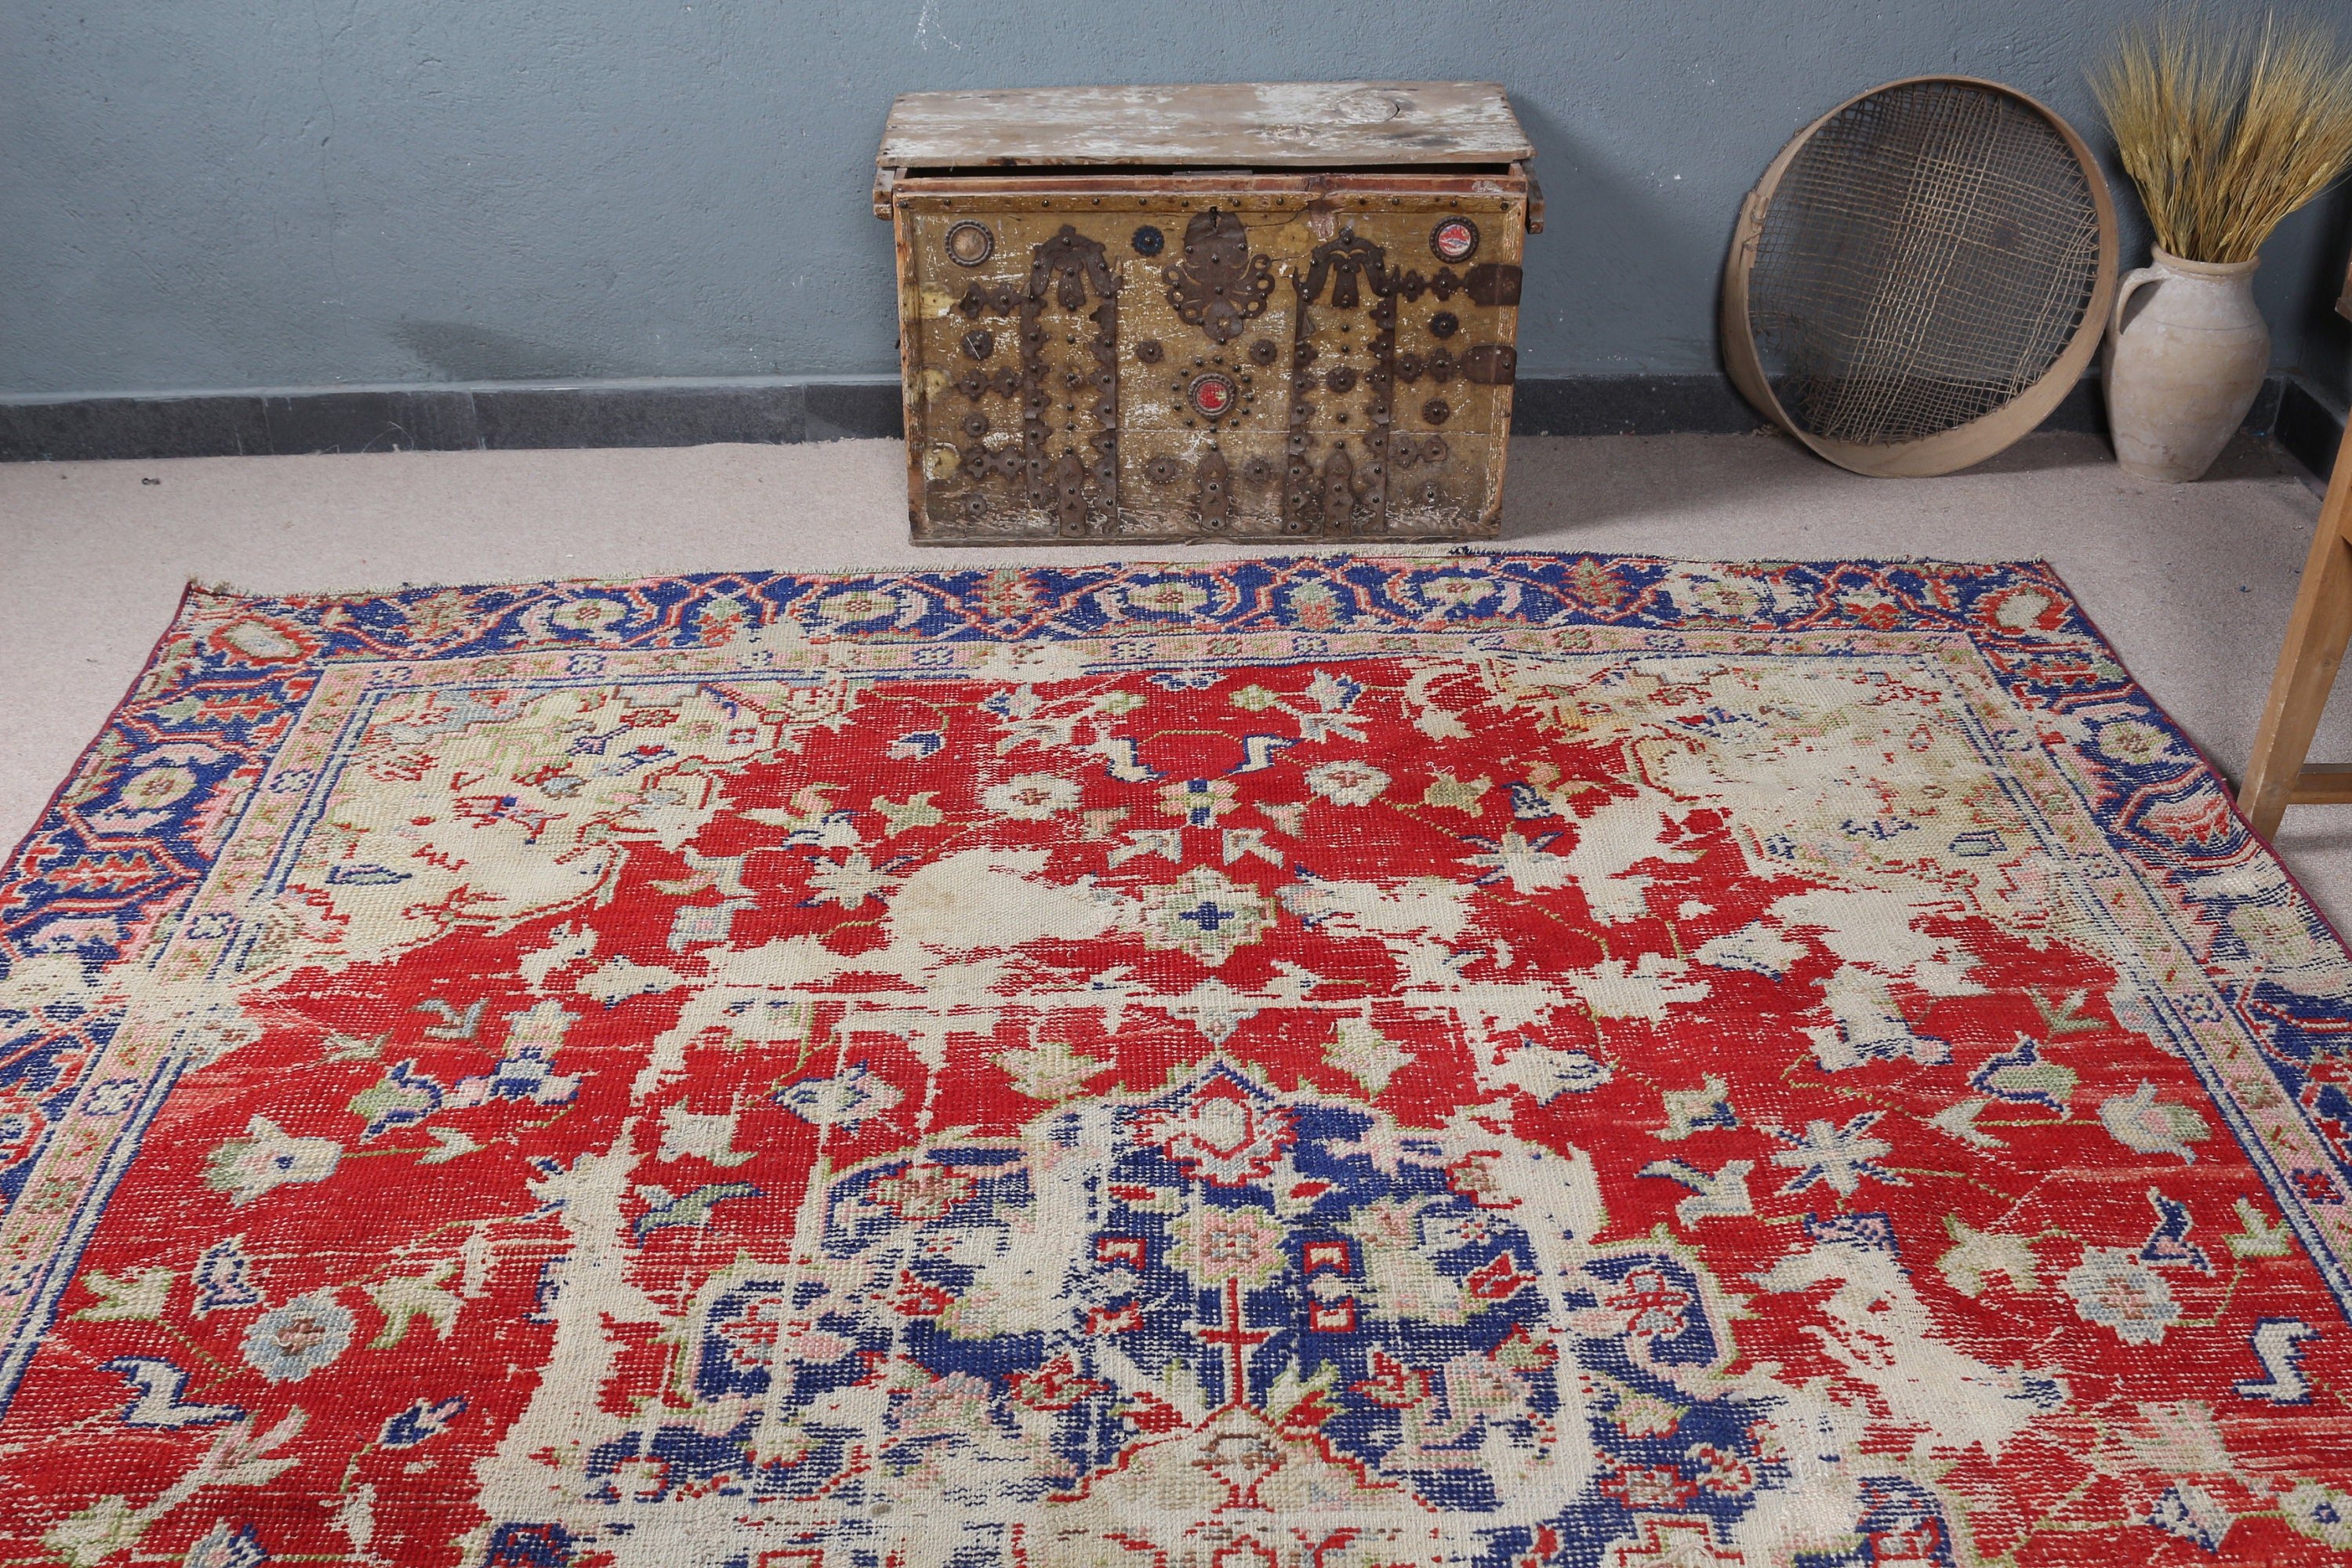 Kitchen Rug, Red Home Decor Rug, Vintage Rugs, Turkish Rug, Living Room Rug, Dining Room Rugs, Antique Rug, 8x10.6 ft Oversize Rug, Old Rug